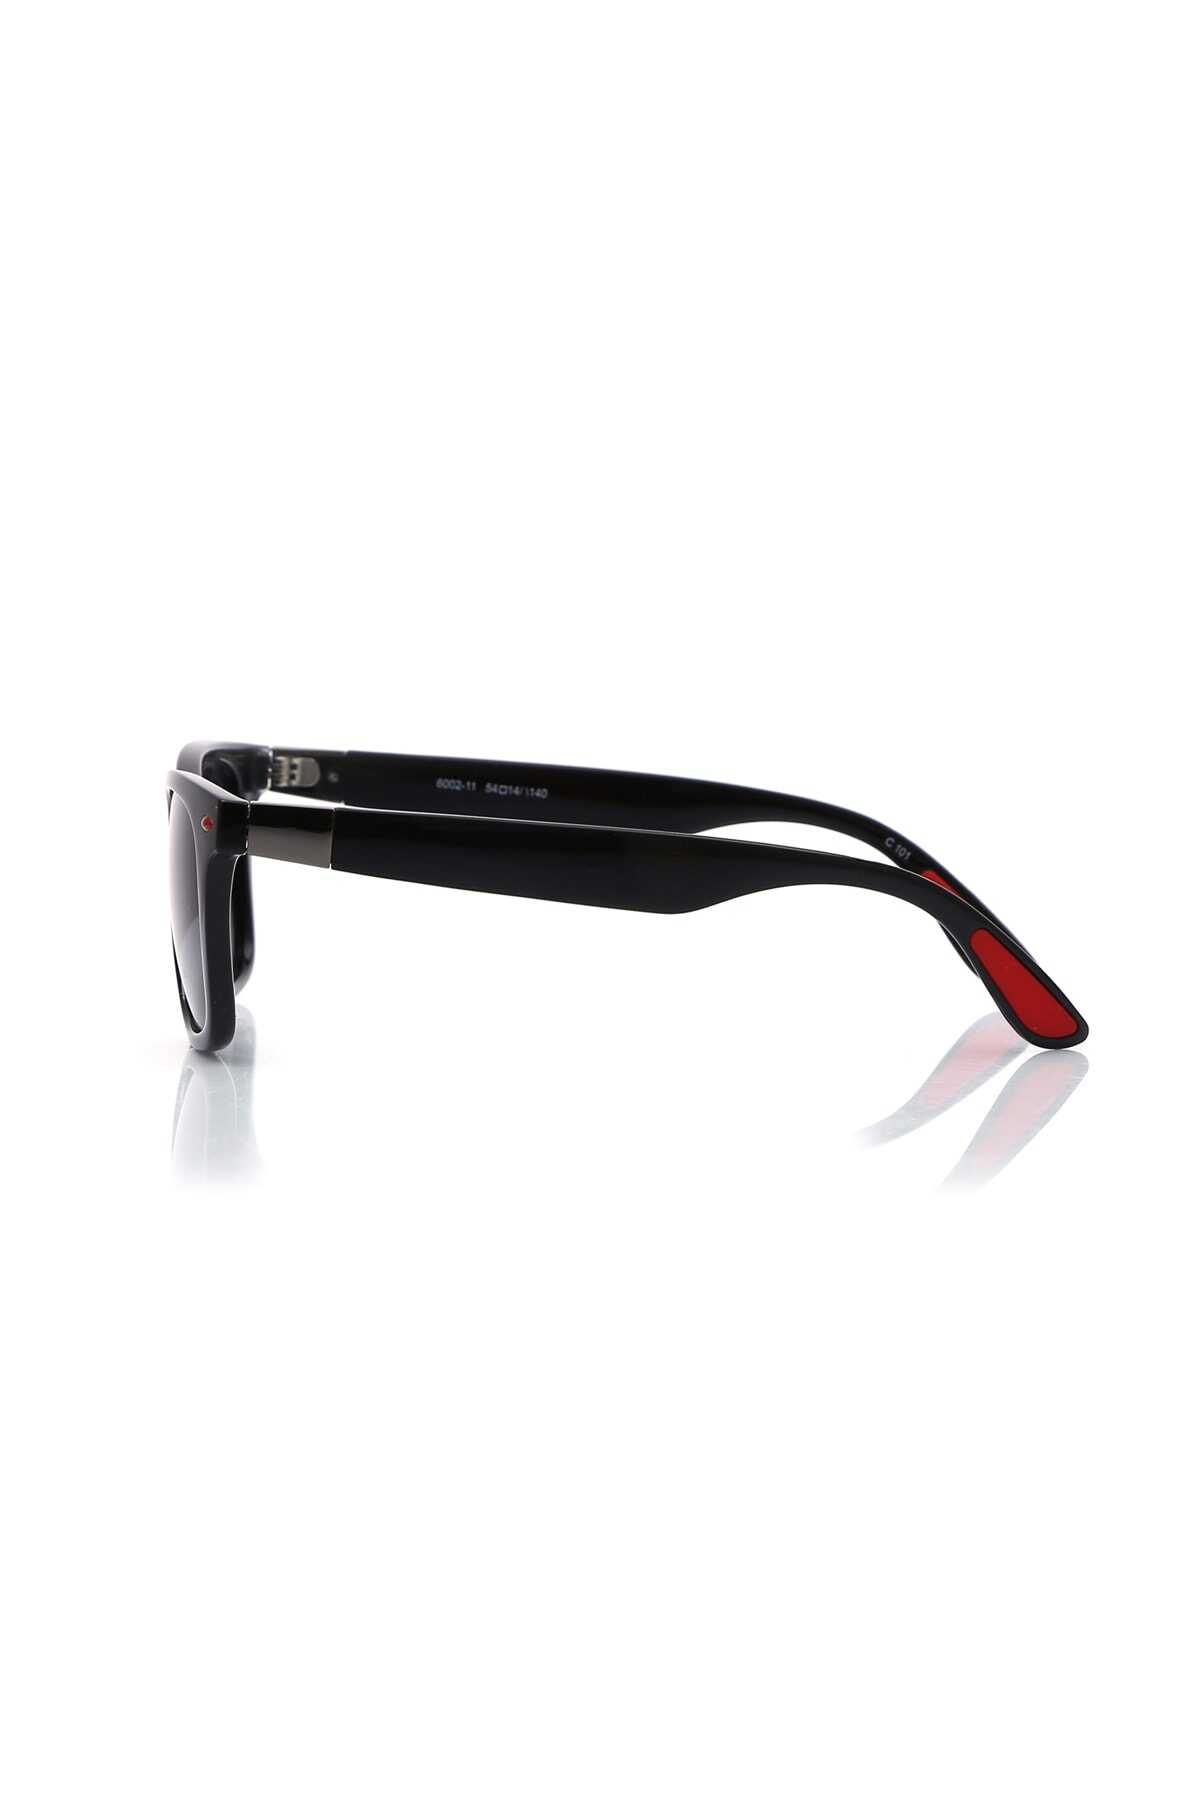 عینک آفتابی یونیسکس هارمونی Bh 6002-11 C101